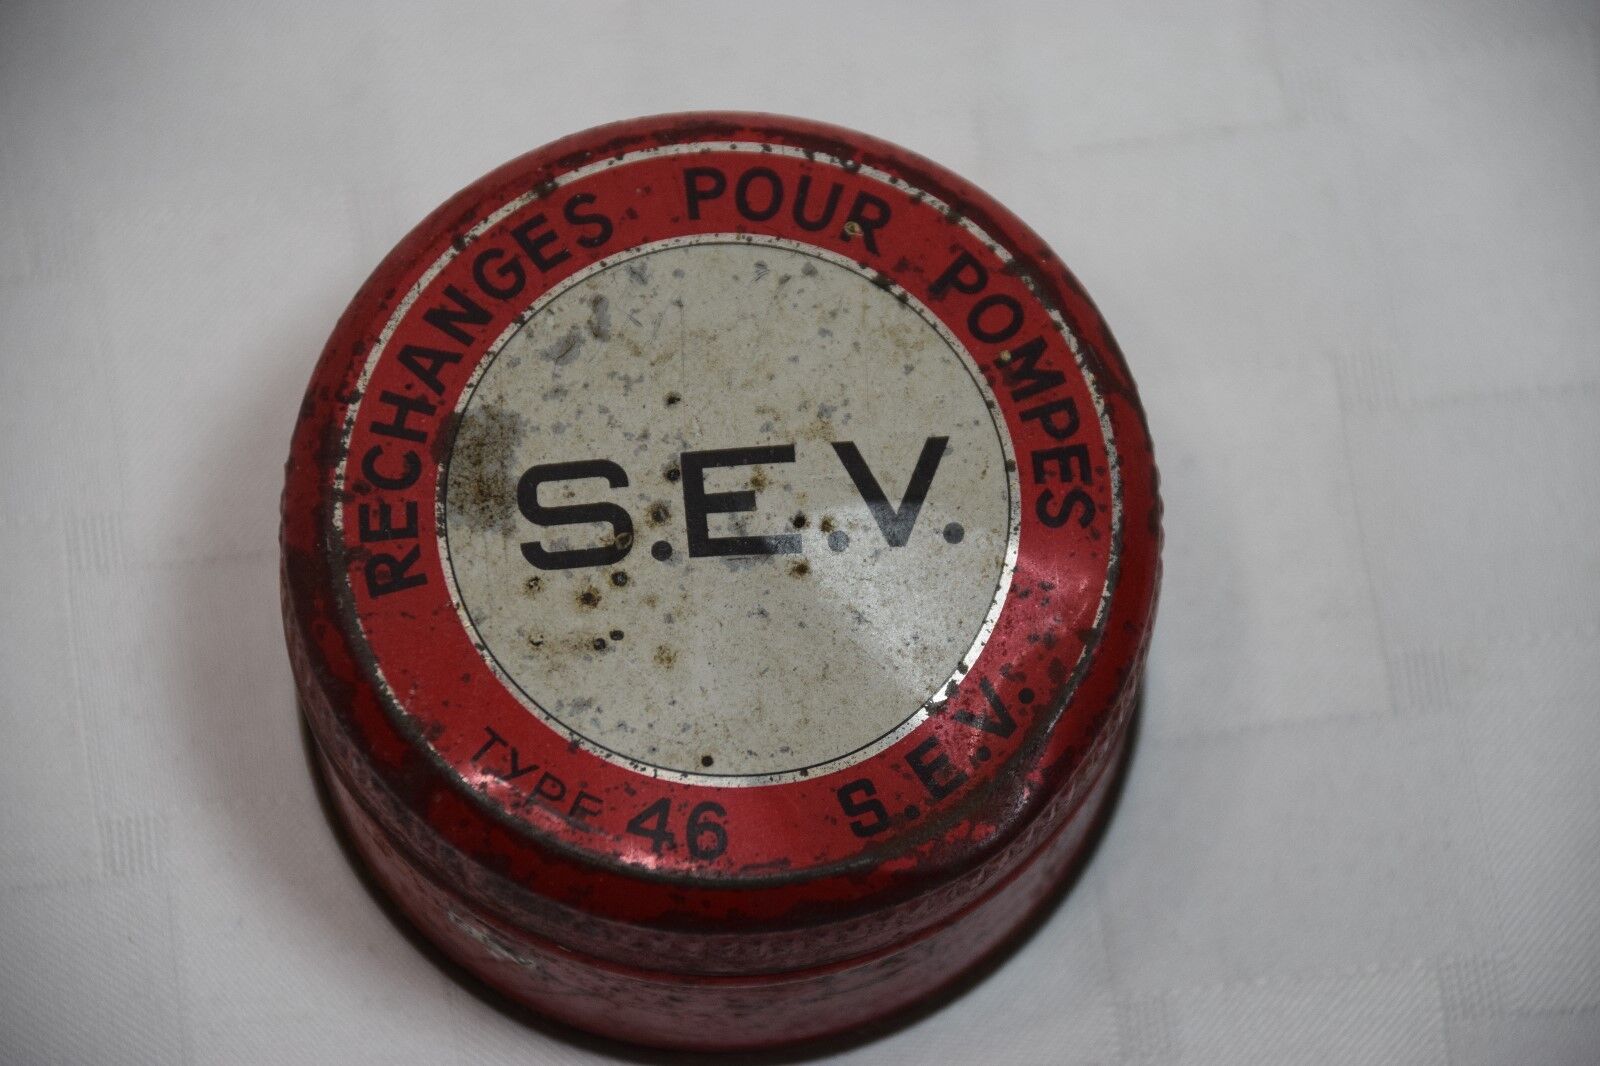 Vintage S.E.V. Type 46 Tin With Lid, Rechanges Pour Pompes